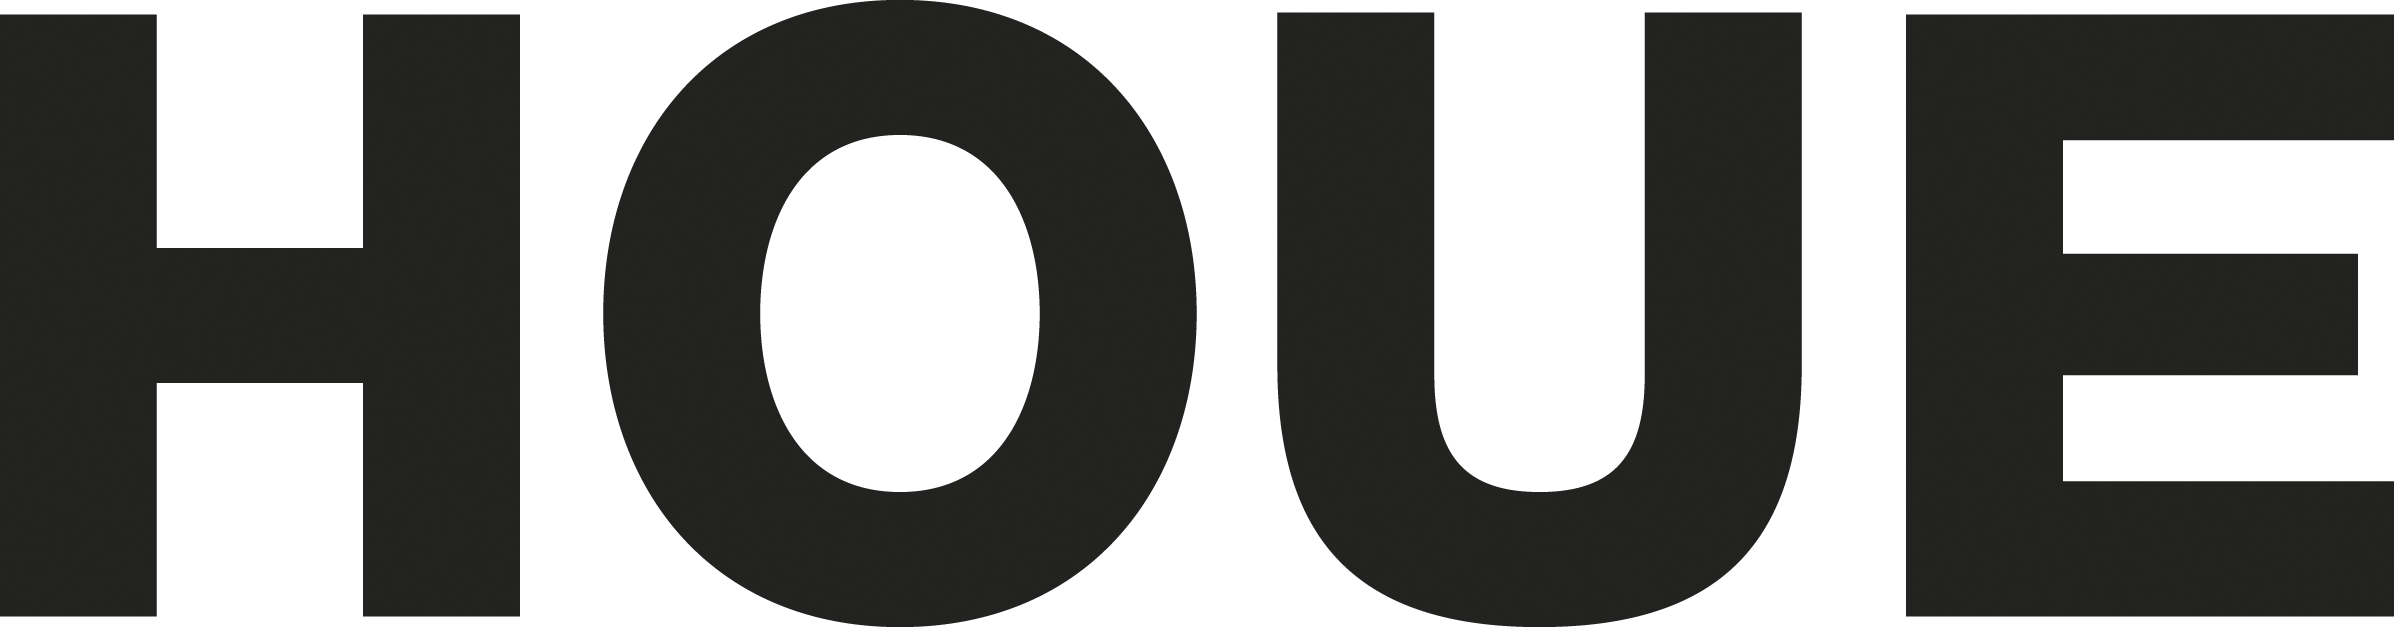 Houe Logo